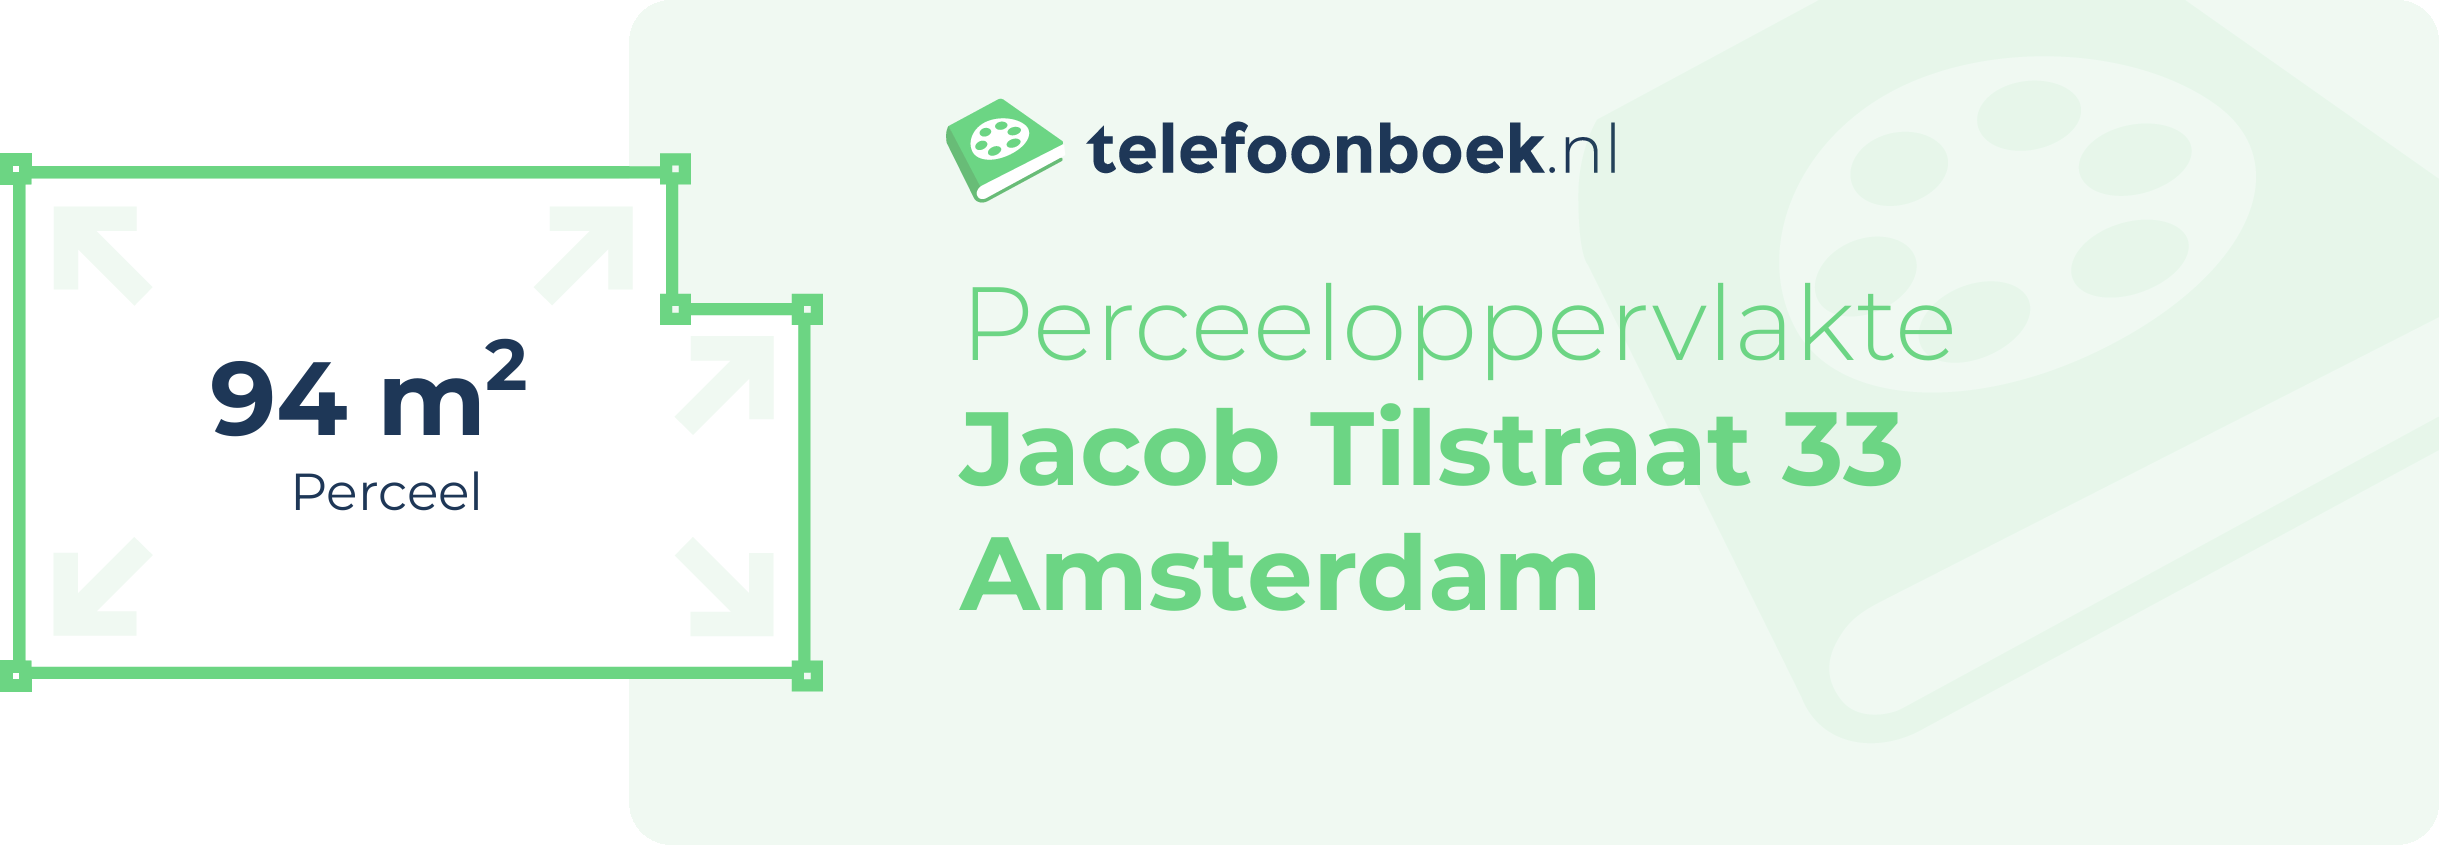 Perceeloppervlakte Jacob Tilstraat 33 Amsterdam